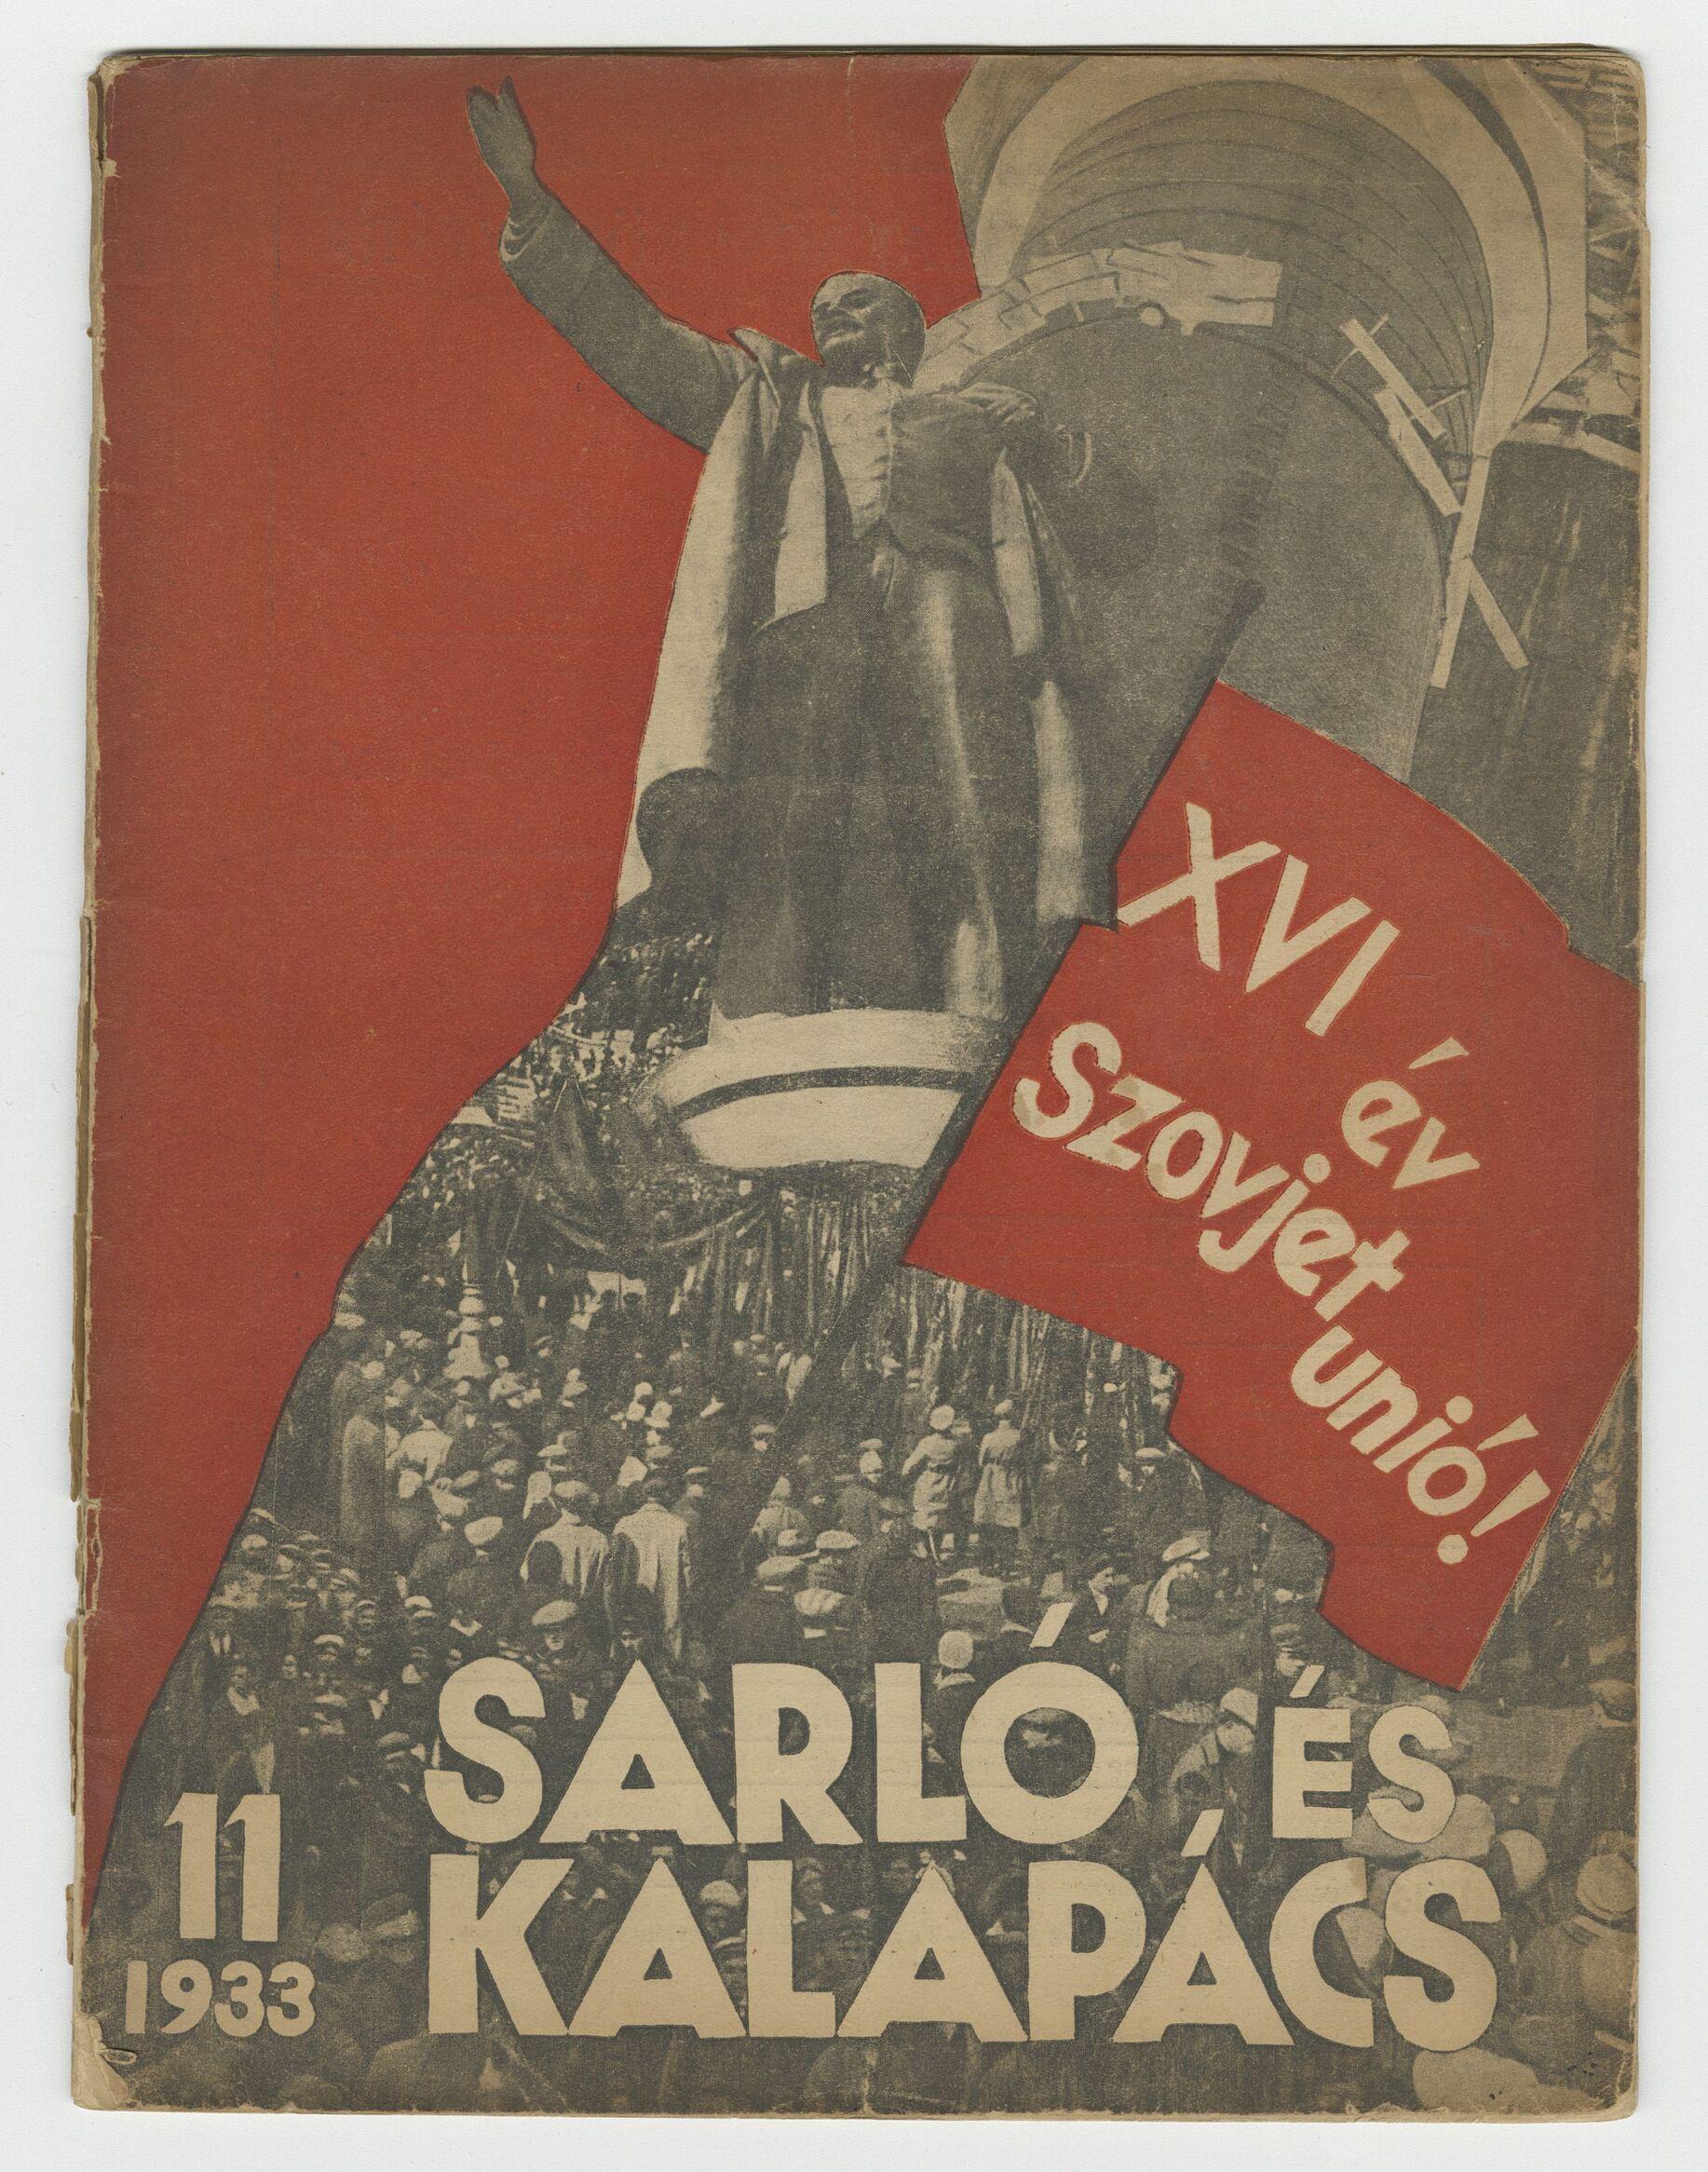 18.	Sarló és Kalapács, 5. évf. 11. szám, 1933. November, Petőfi Irodalmi Múzeum